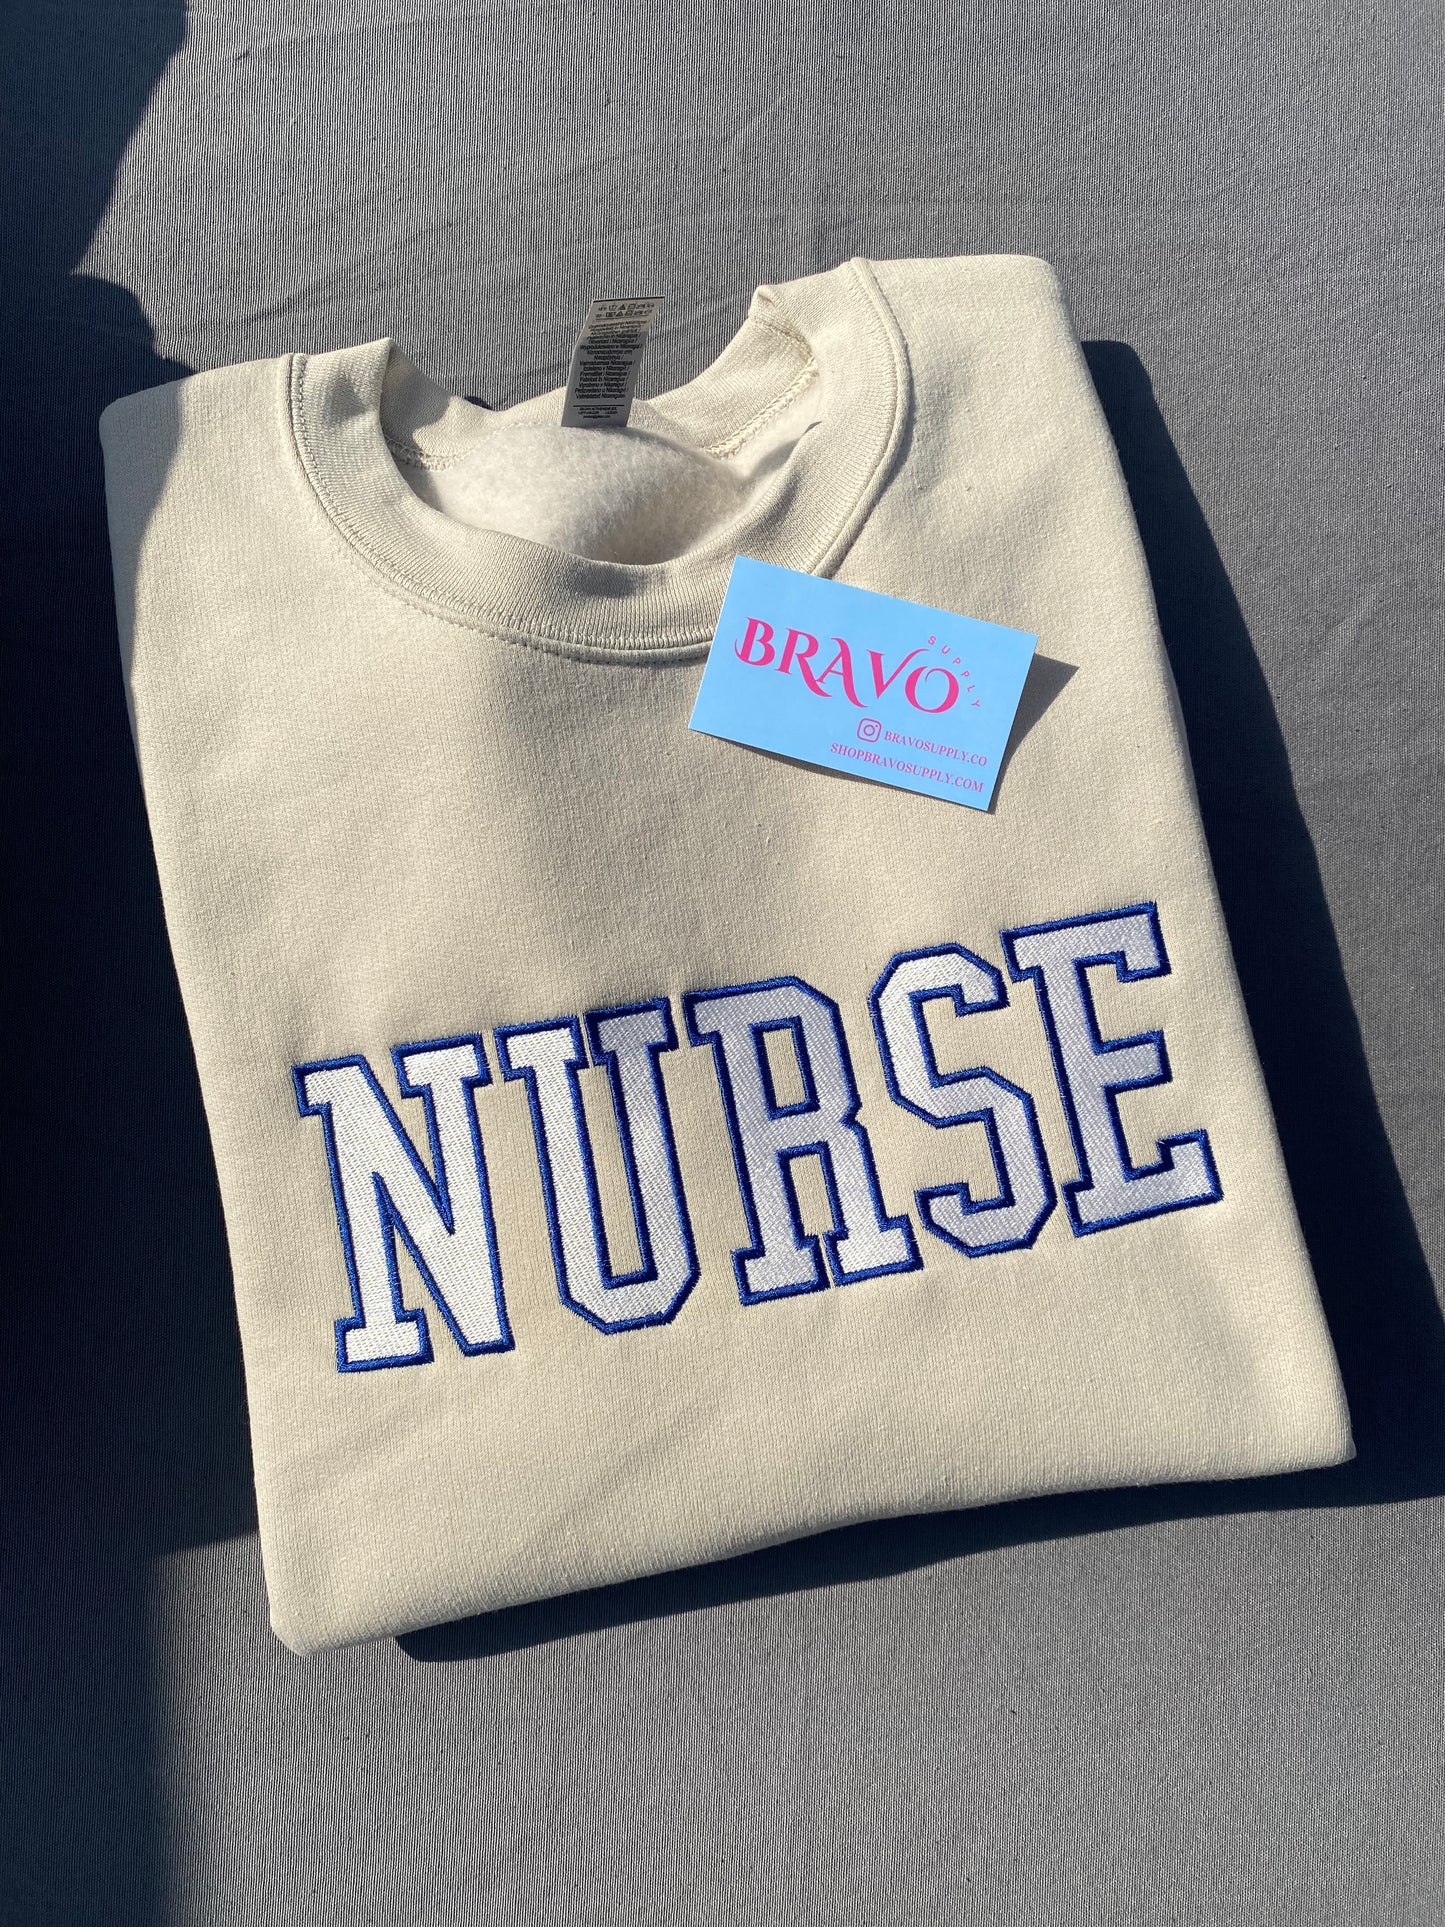 Nurse varsity embroidered sweatshirt